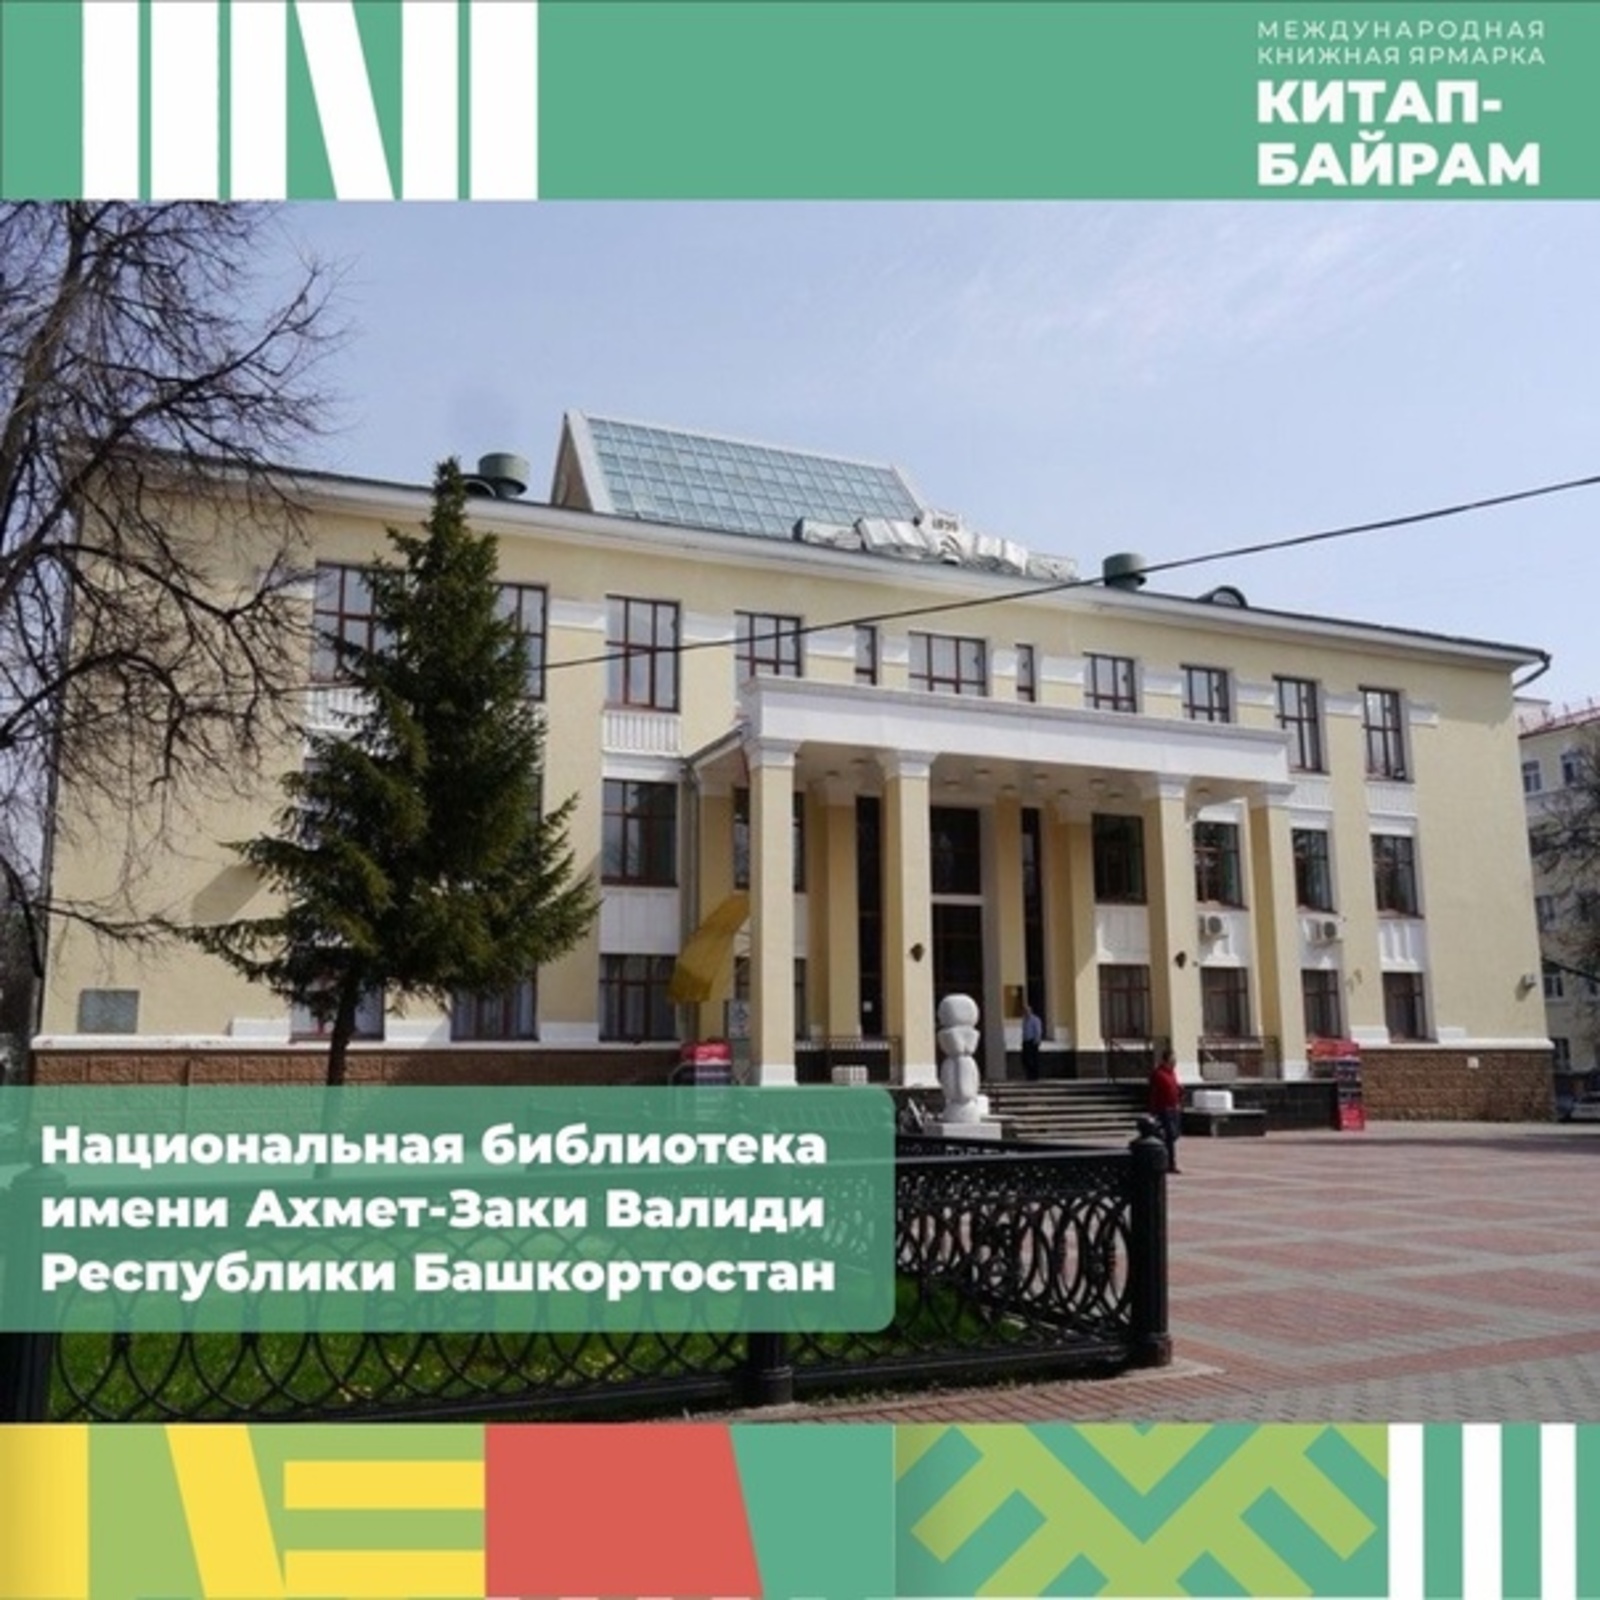 В национальной библиотеке имени Ахмет-Заки Валиди Республики Башкортостан проходит выставка «В книжной памяти мгновения войны»